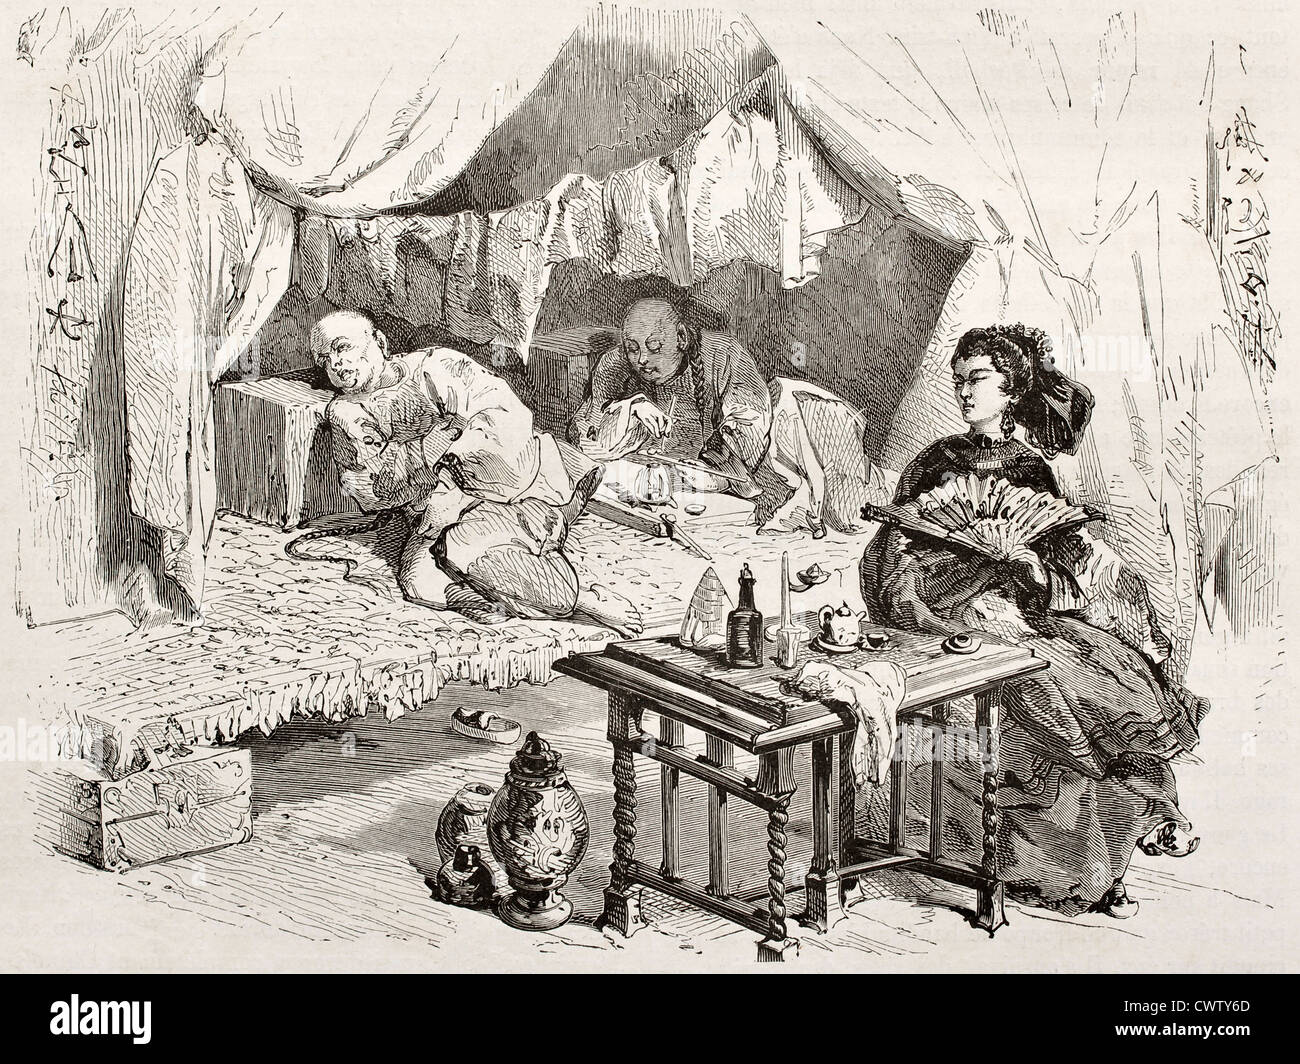 Ilustración antigua de fumadores de opio Foto de stock